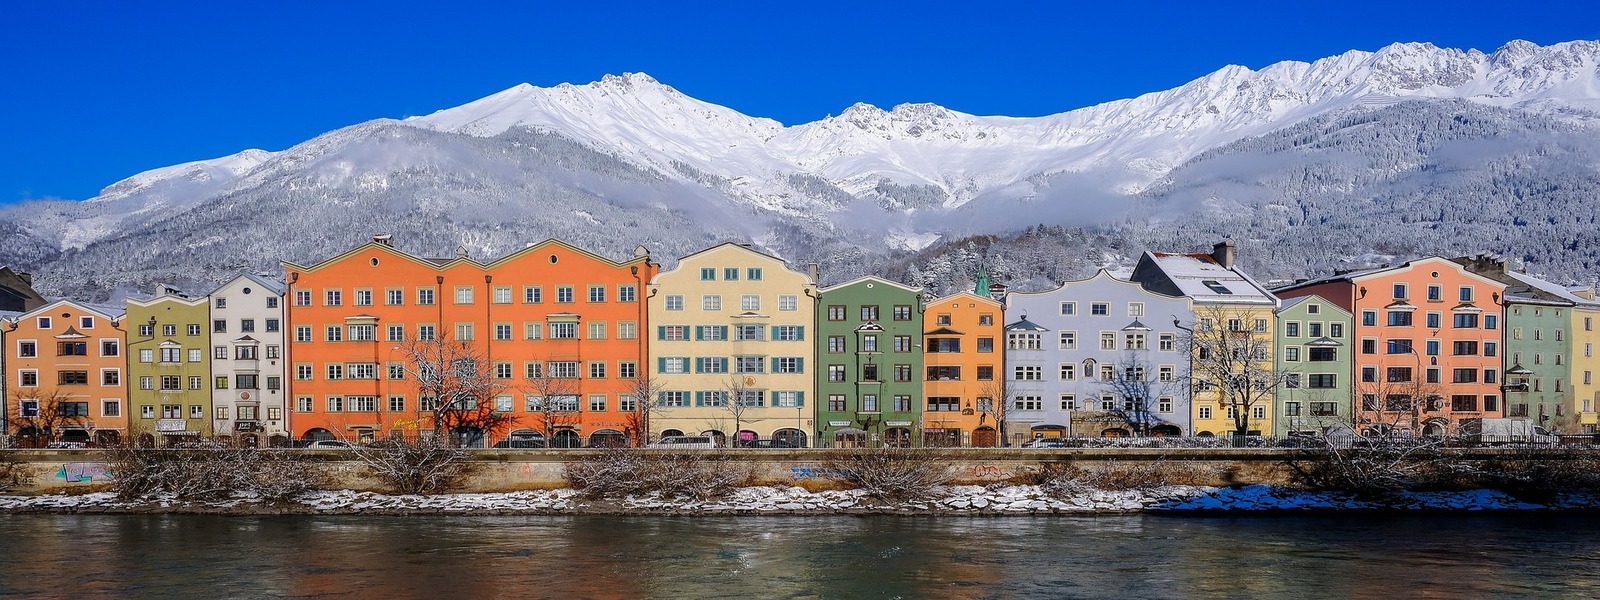 Innsbruck télen